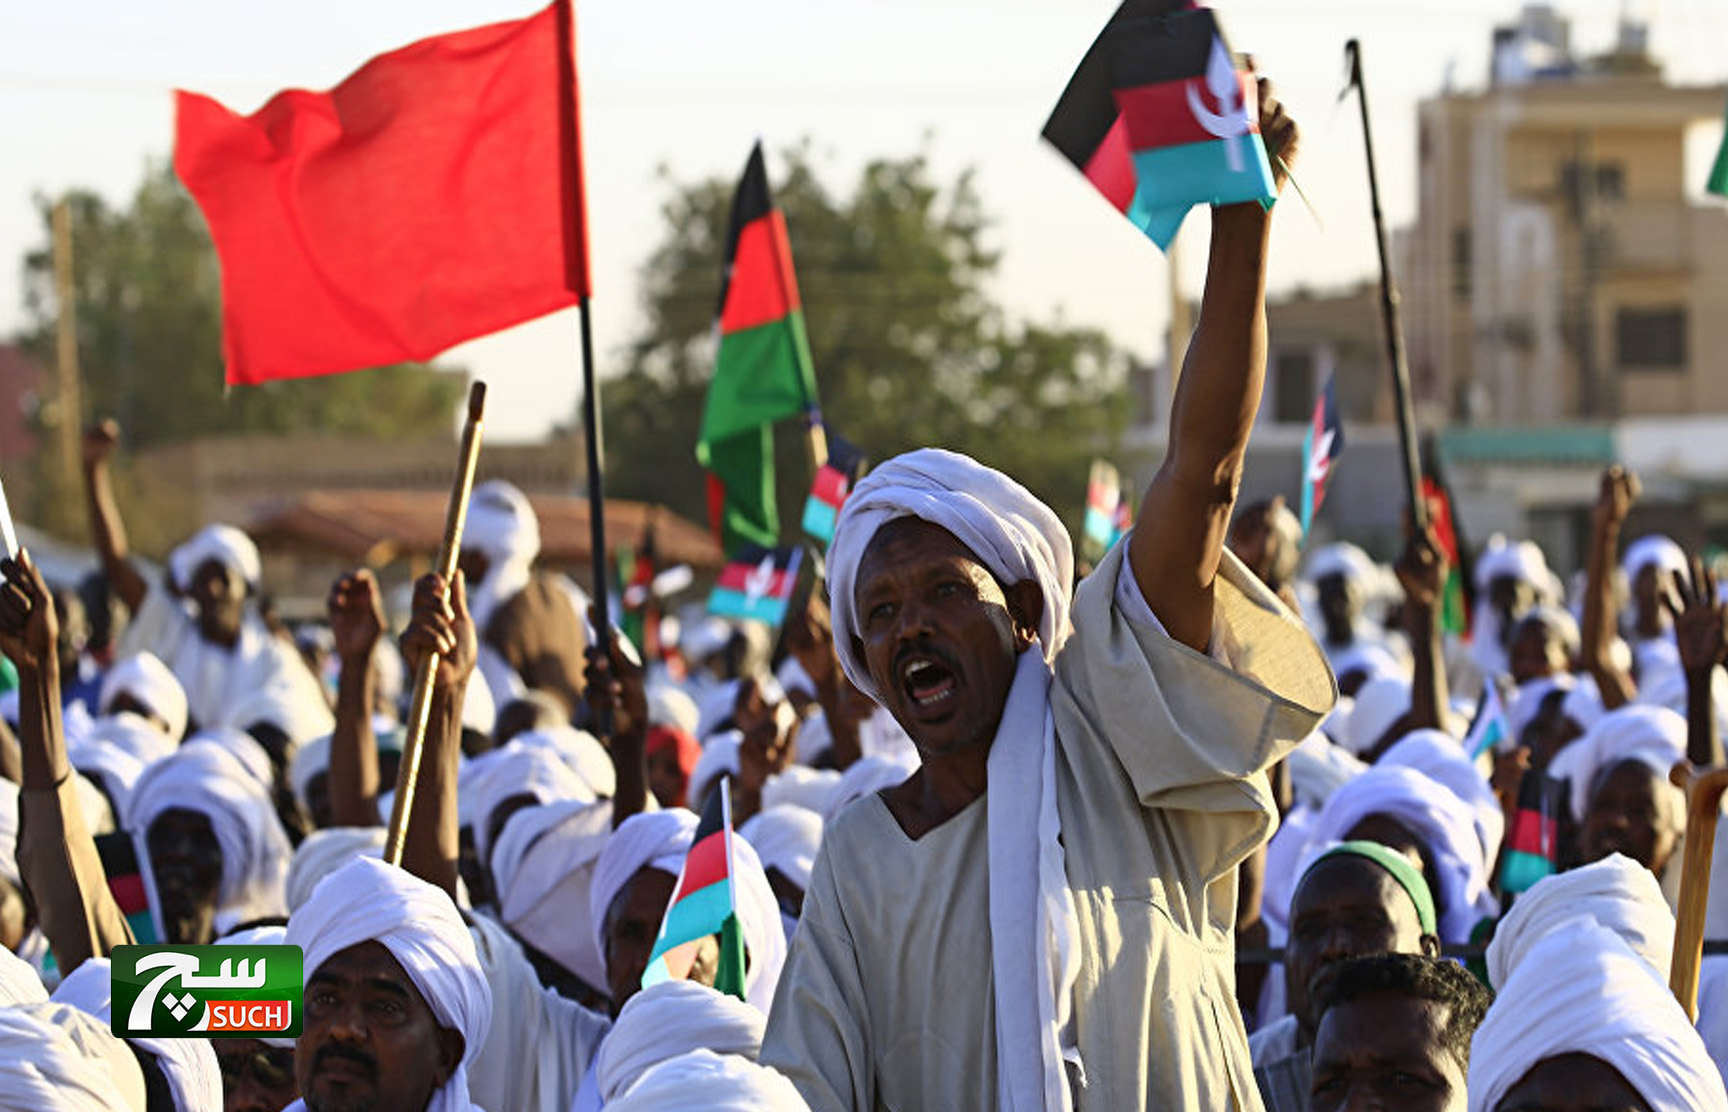 البنك المركزي السوداني يتخذ قرارا عاجلا لاحتواء أزمة الاحتجاجات